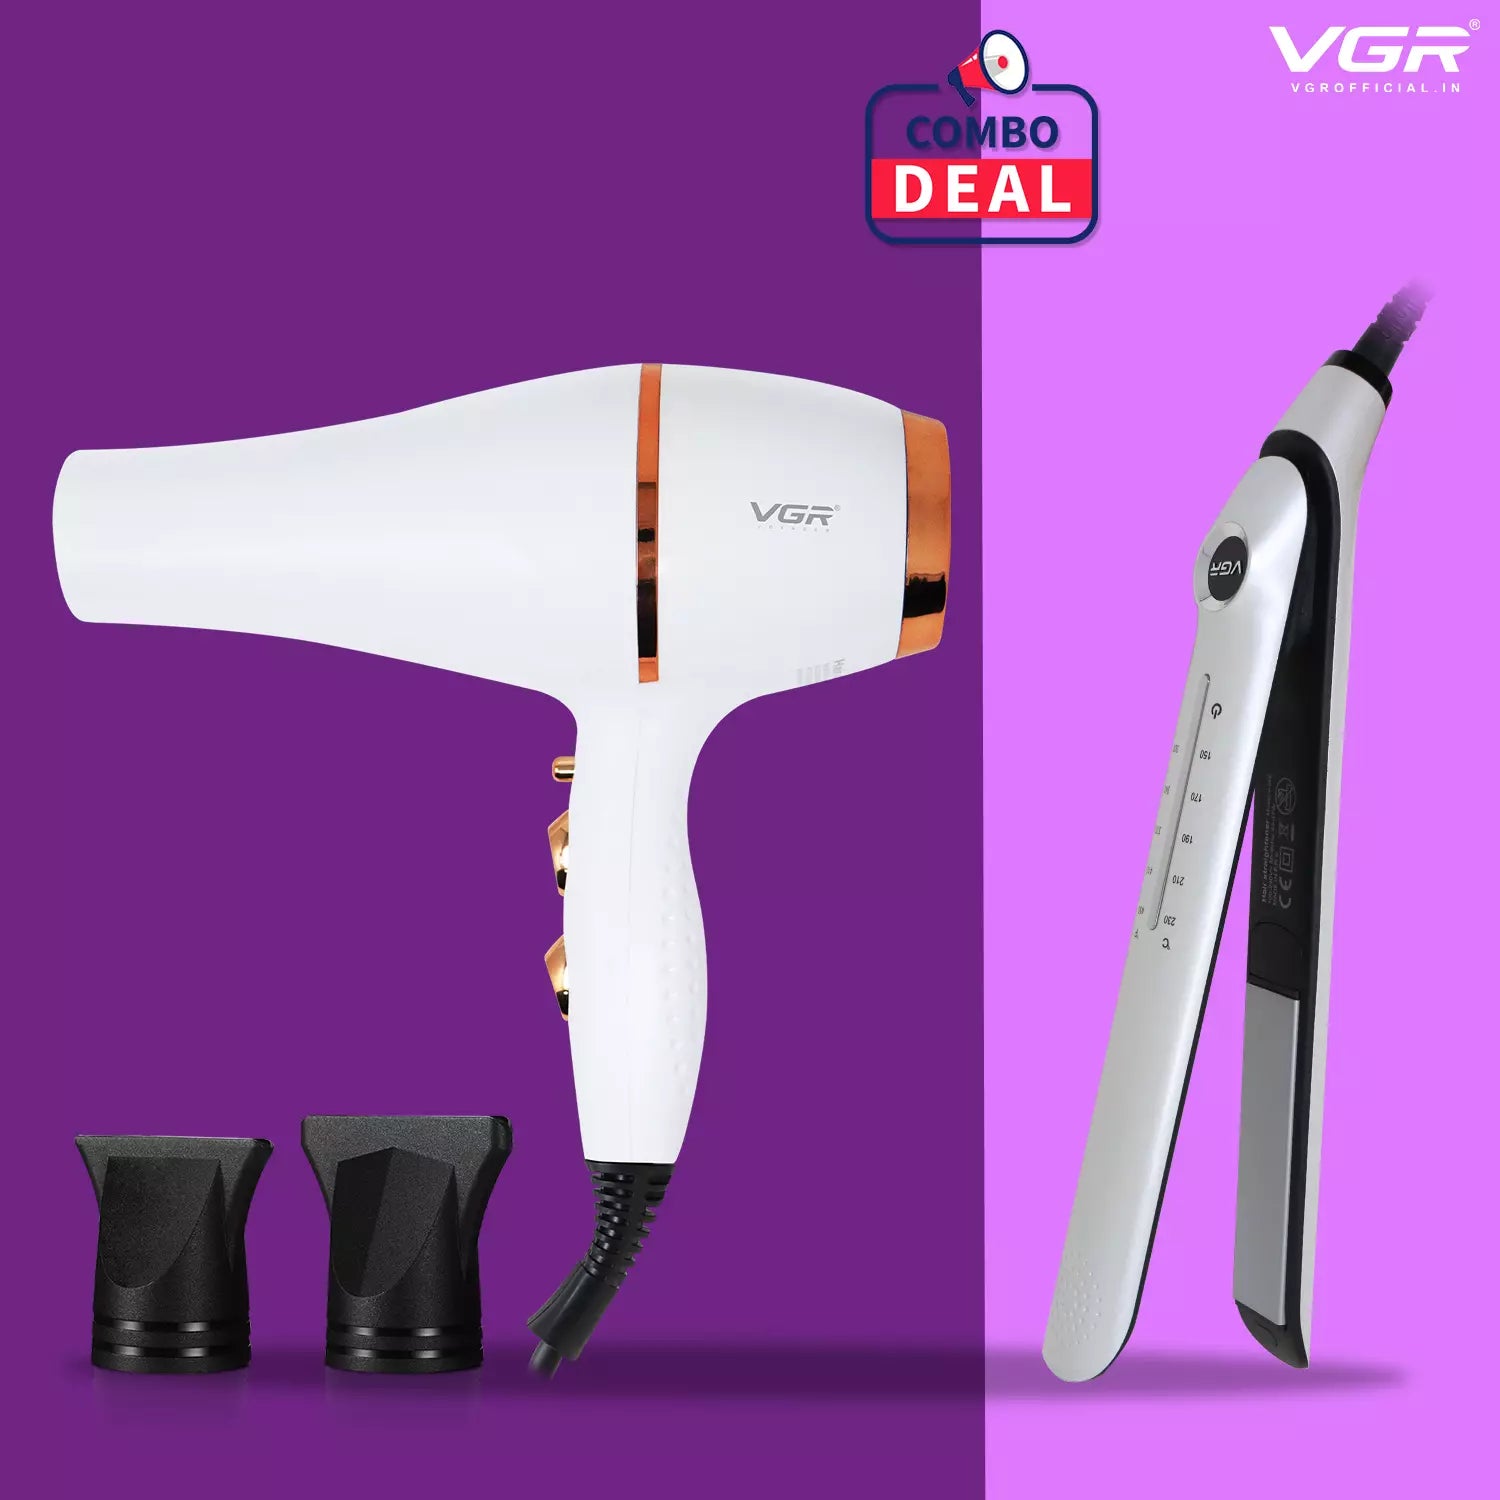 VGR V-566 Straightener With VGR V-414 Dryer Combo Deal